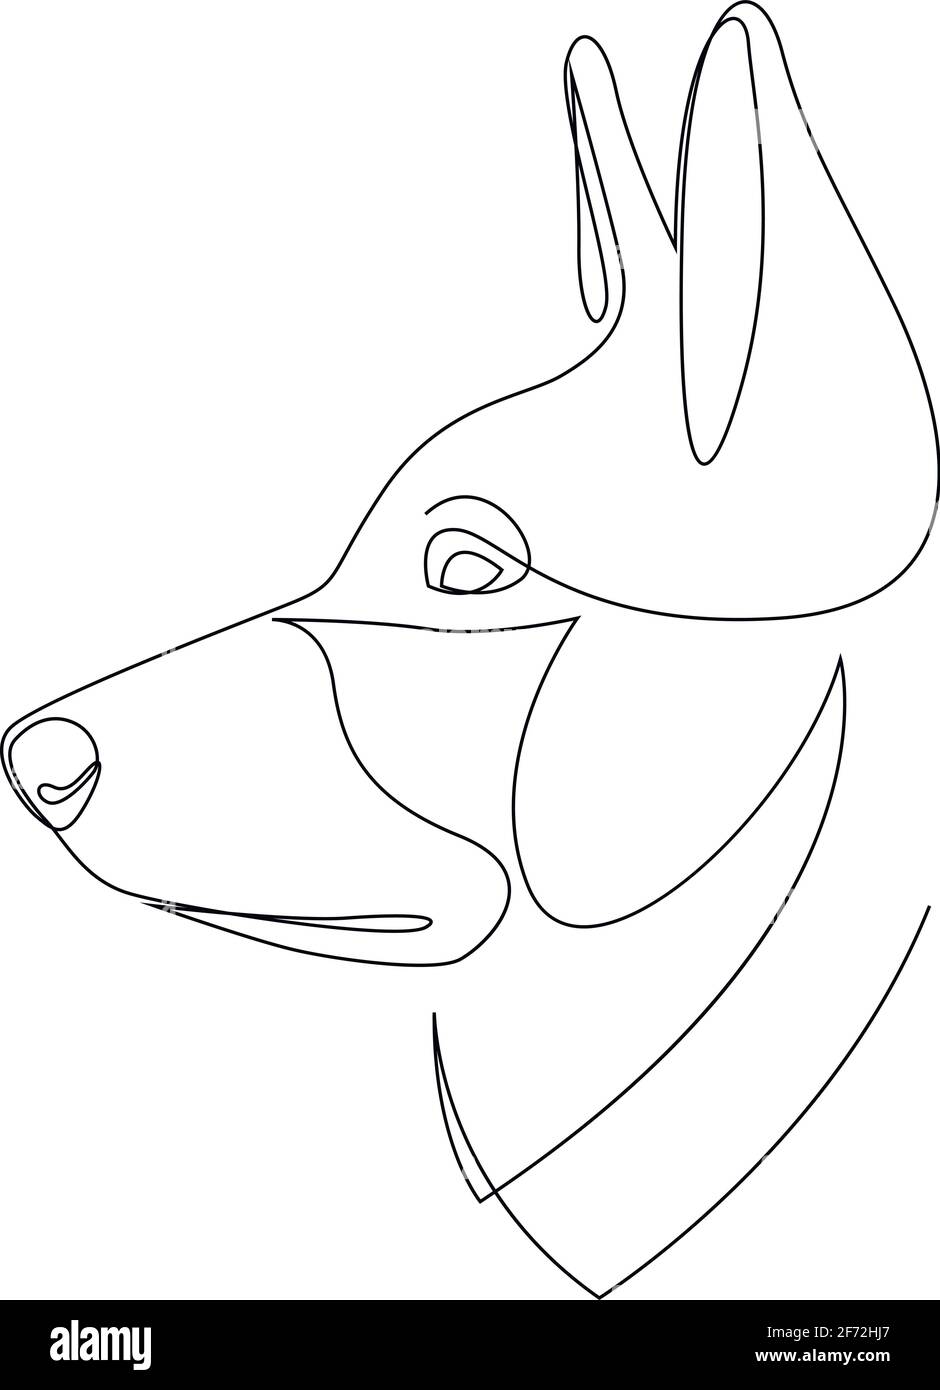 Portrait de chien en style dessin au trait continu. Tête de berger allemande esquisse linéaire noire isolée sur fond blanc. Illustration vectorielle Illustration de Vecteur